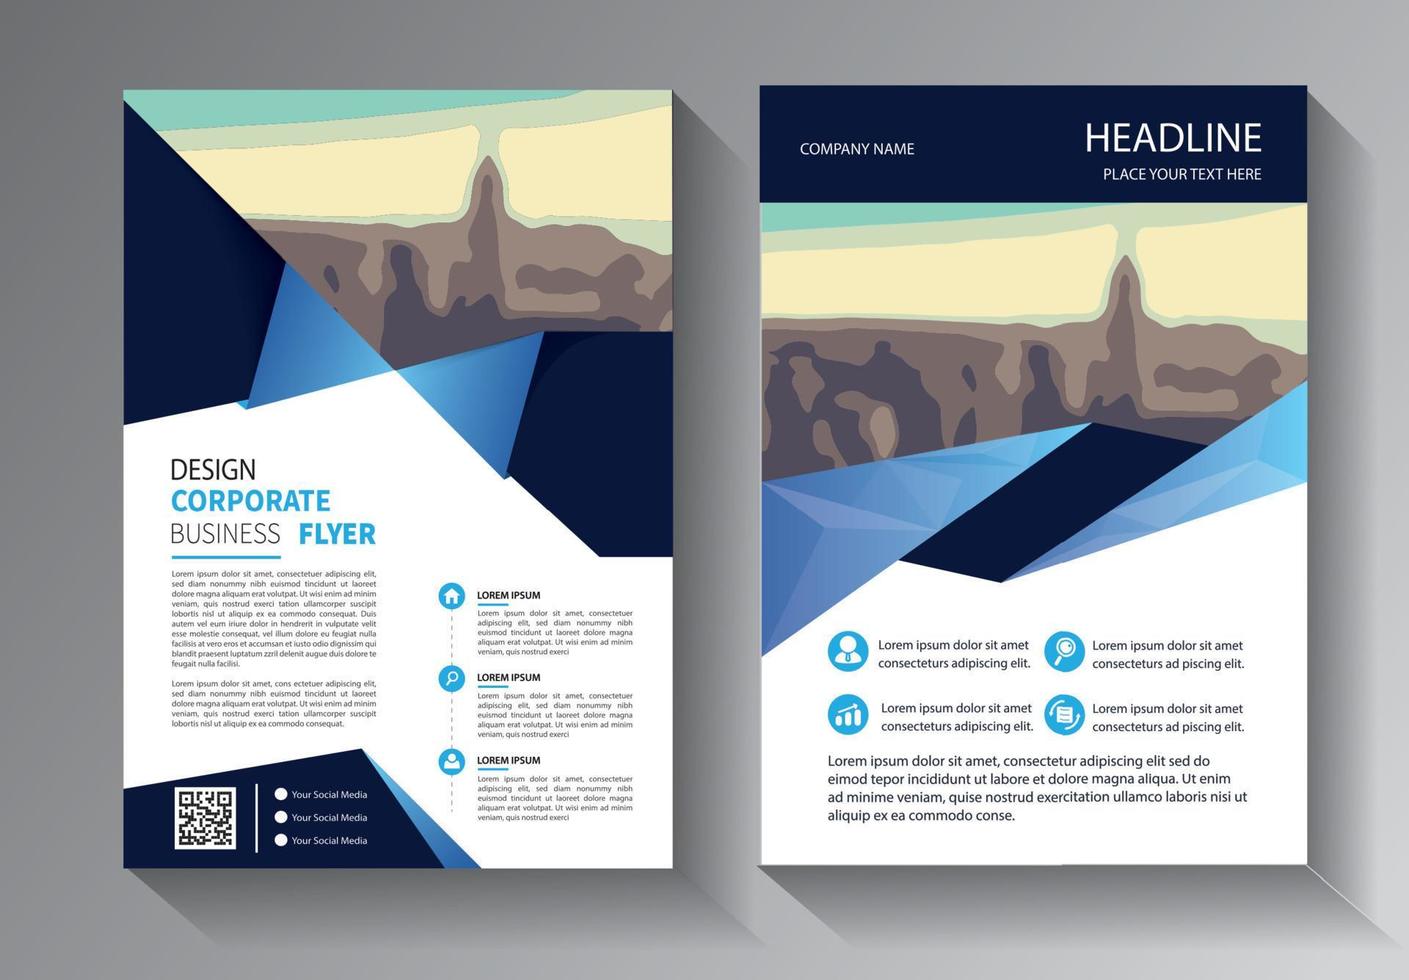 Flyer-Business-Vorlage für Broschüren-Jahresbericht mit moderner Idee vektor